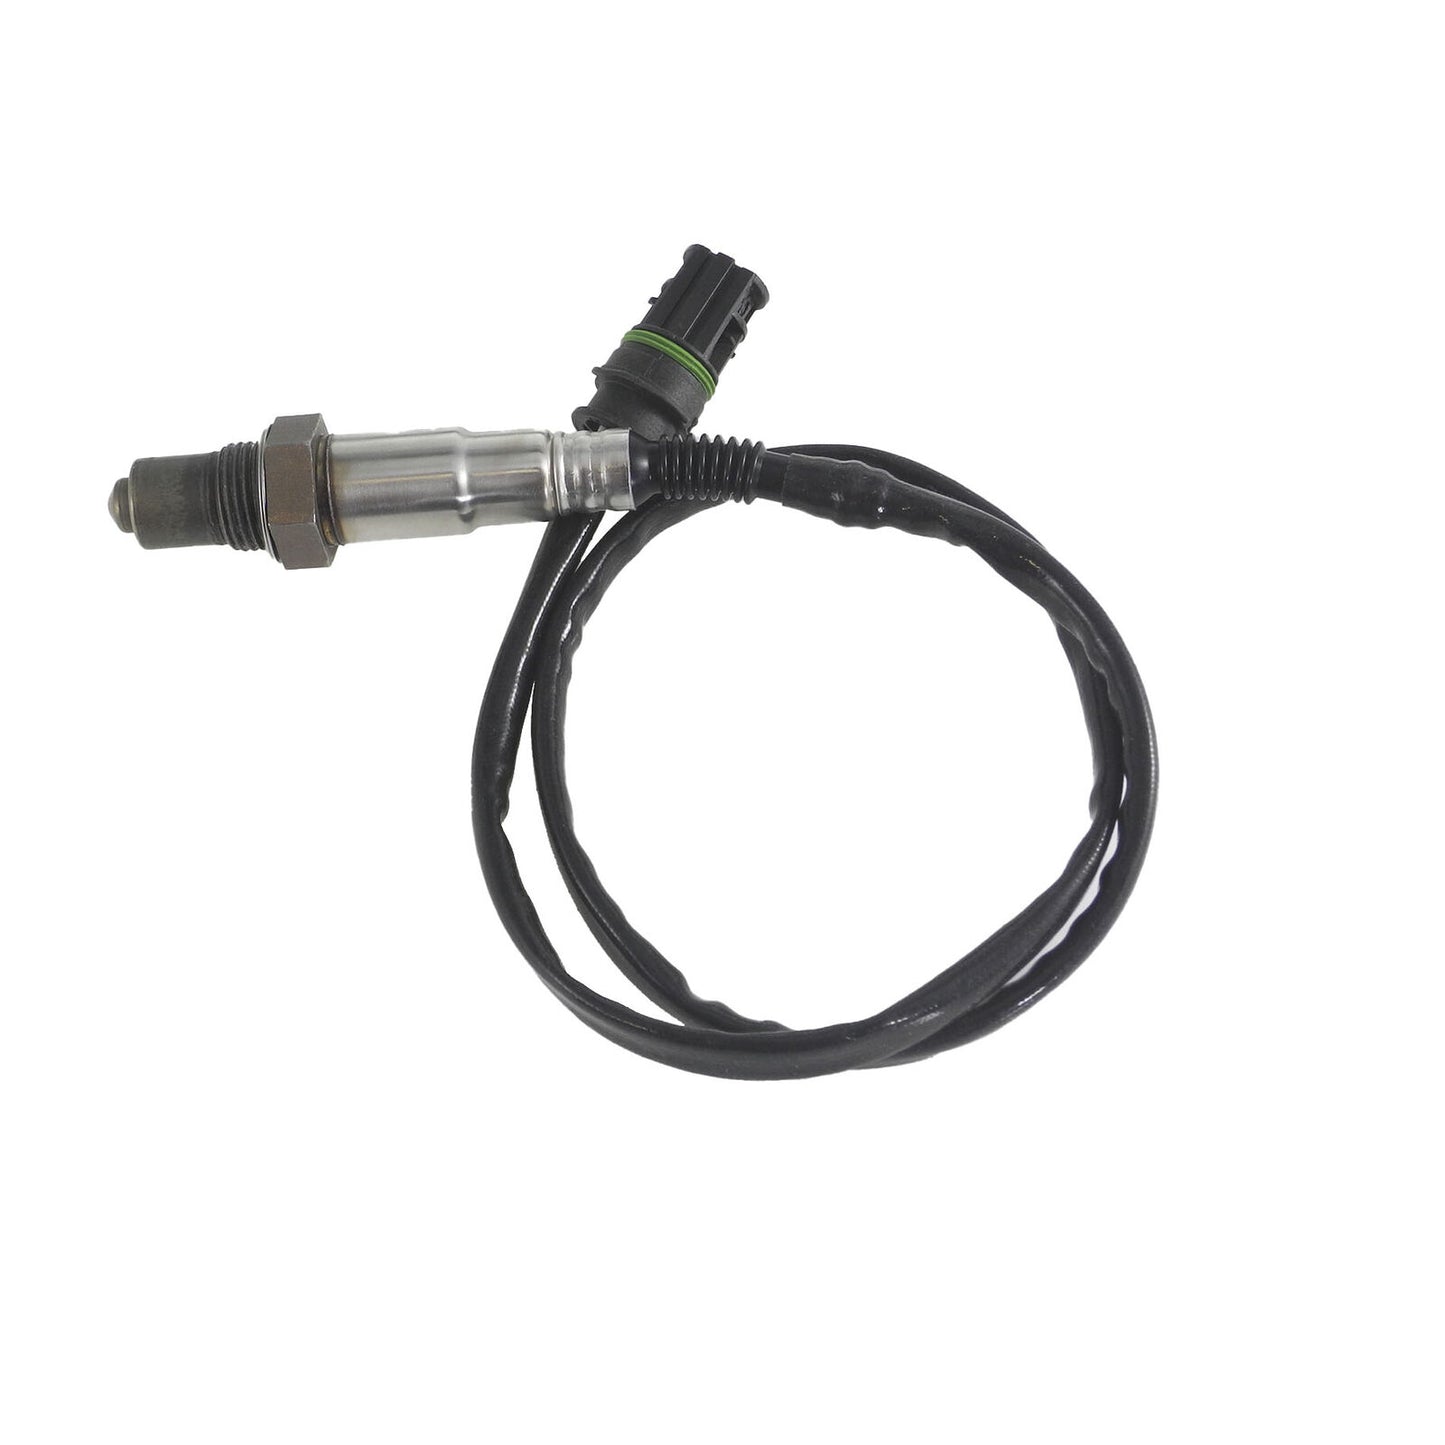 4Pcs Neu Oxygen Sensor Für 06-10 BMW 650i Basis 4.8L